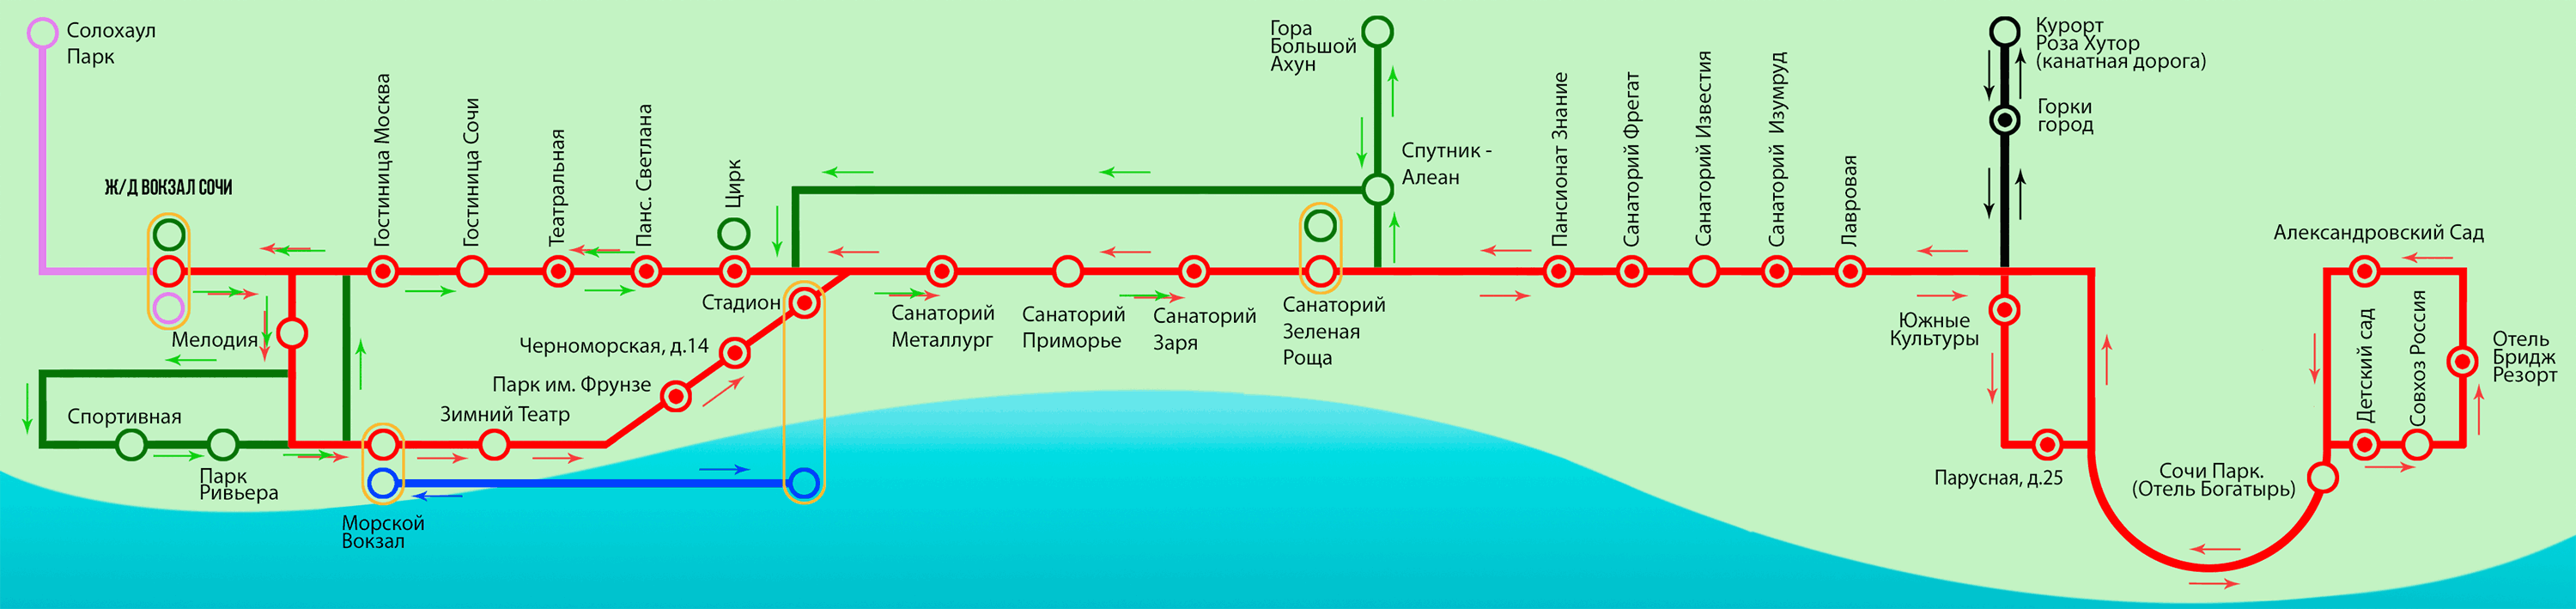 Маршрут 4 железнодорожный. ЖД вокзал Адлер остановки общественного транспорта на карте. ЖД вокзалы Сочи и Адлера на карте. Схема путей сочинского железнодорожного вокзала. Схема ж/д вокзала Сочи-Адлер.